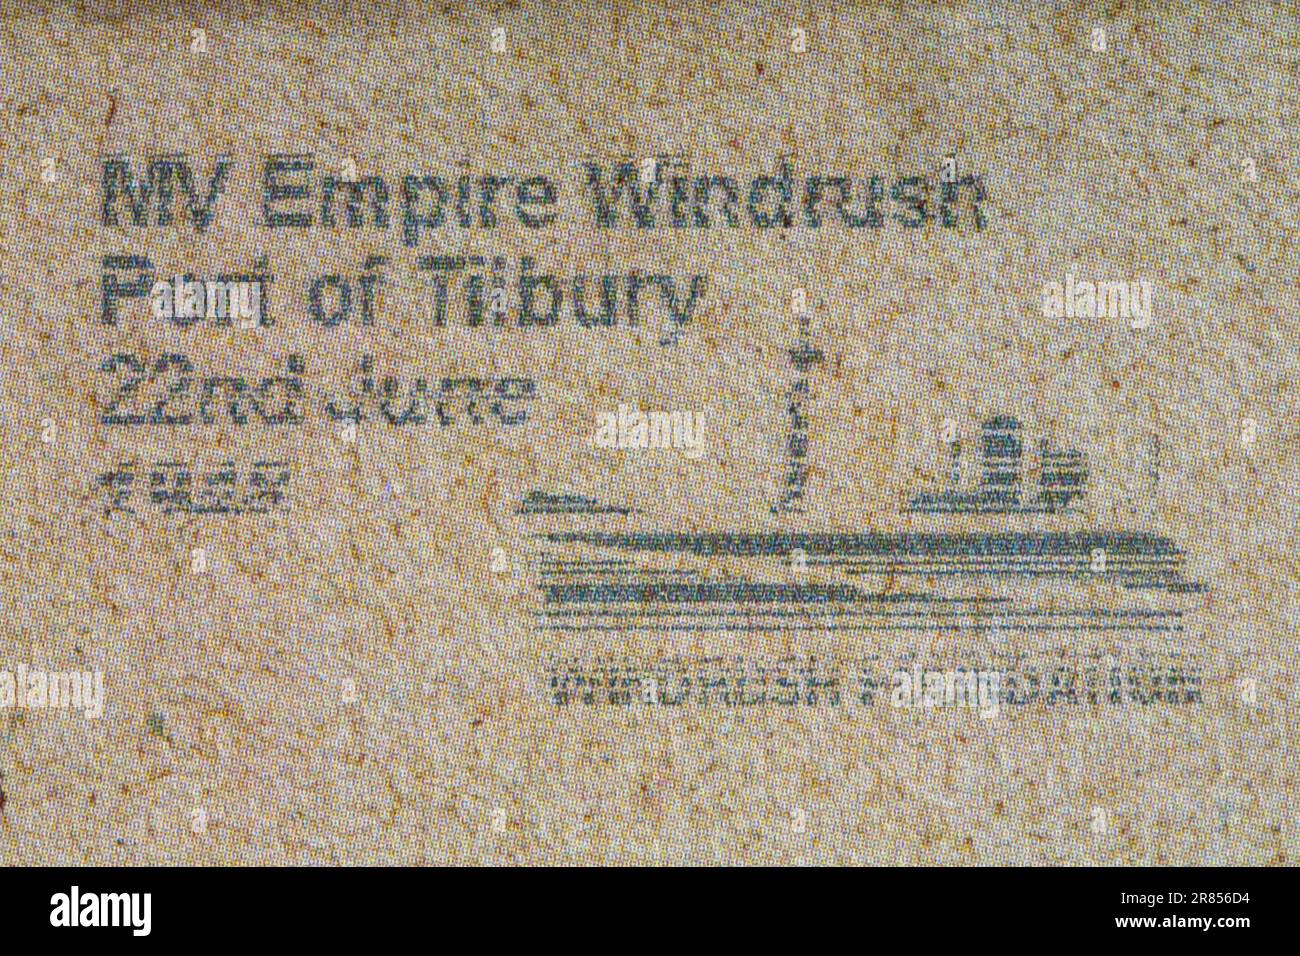 MV Empire Windrush Port of Tilbury 22nd June Windrush Foundation message franked on envelope Stock Photo